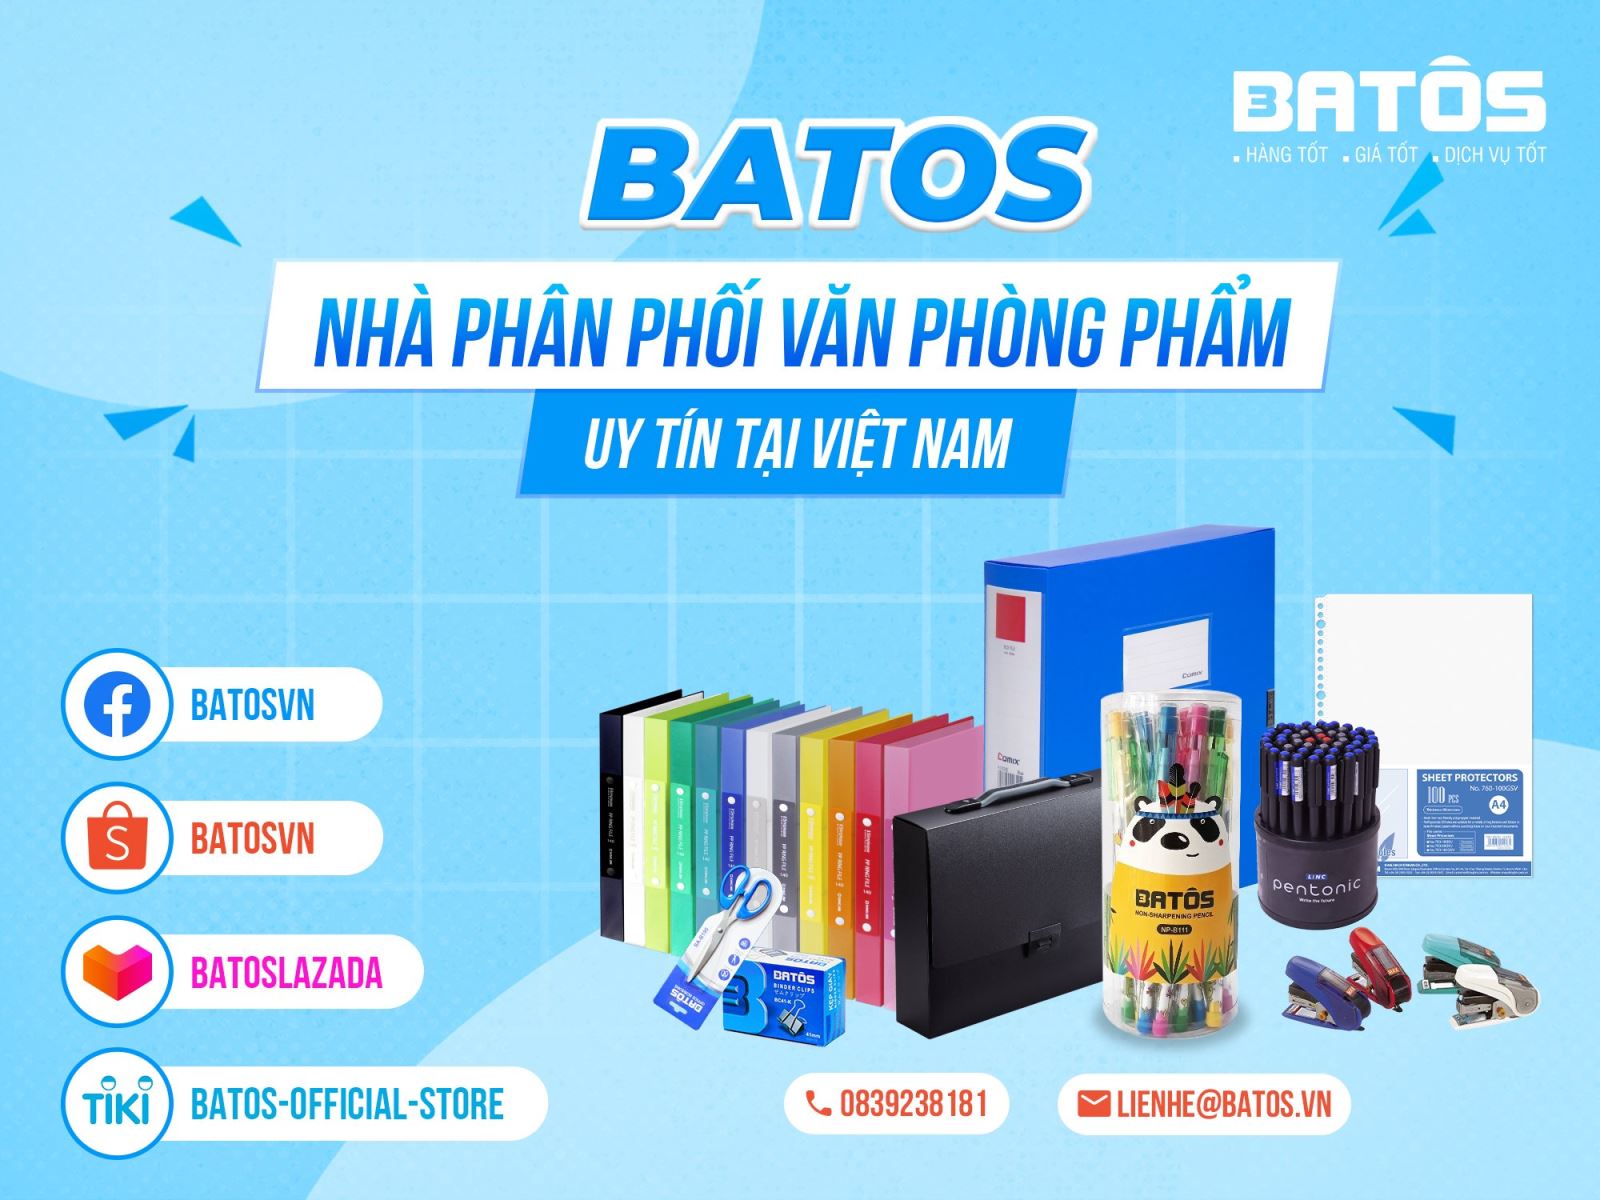 Batos - Chuyên cung cấp các mặt hàng VPP và tiêu dùng chính hãng